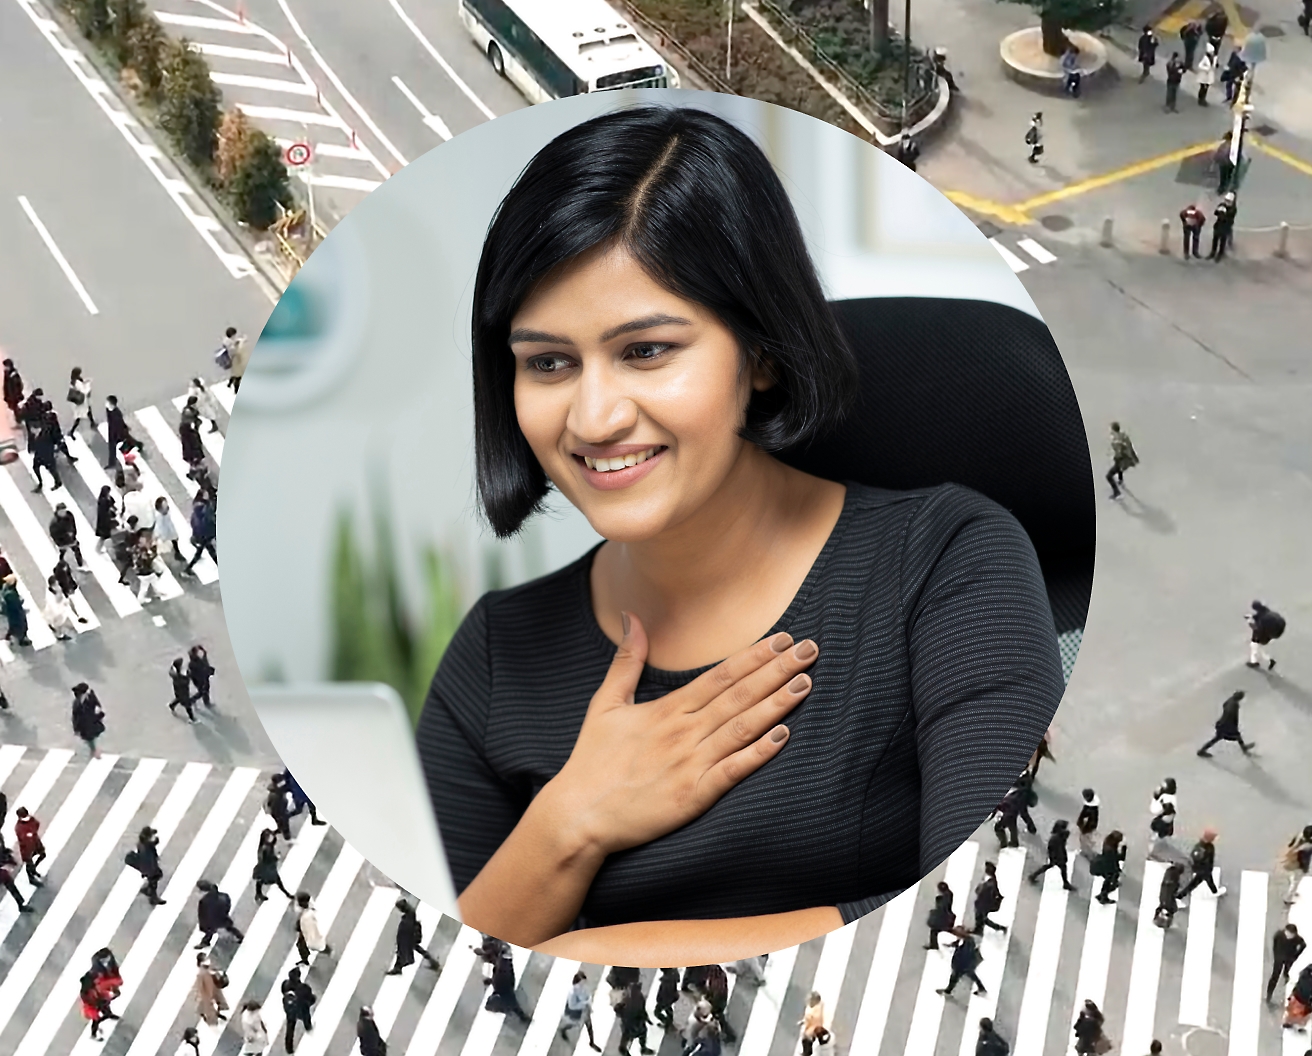 一名女性一手放在胸前，一手在使用膝上型電腦工作，背景影像設定為馬路交叉口，有行人經過